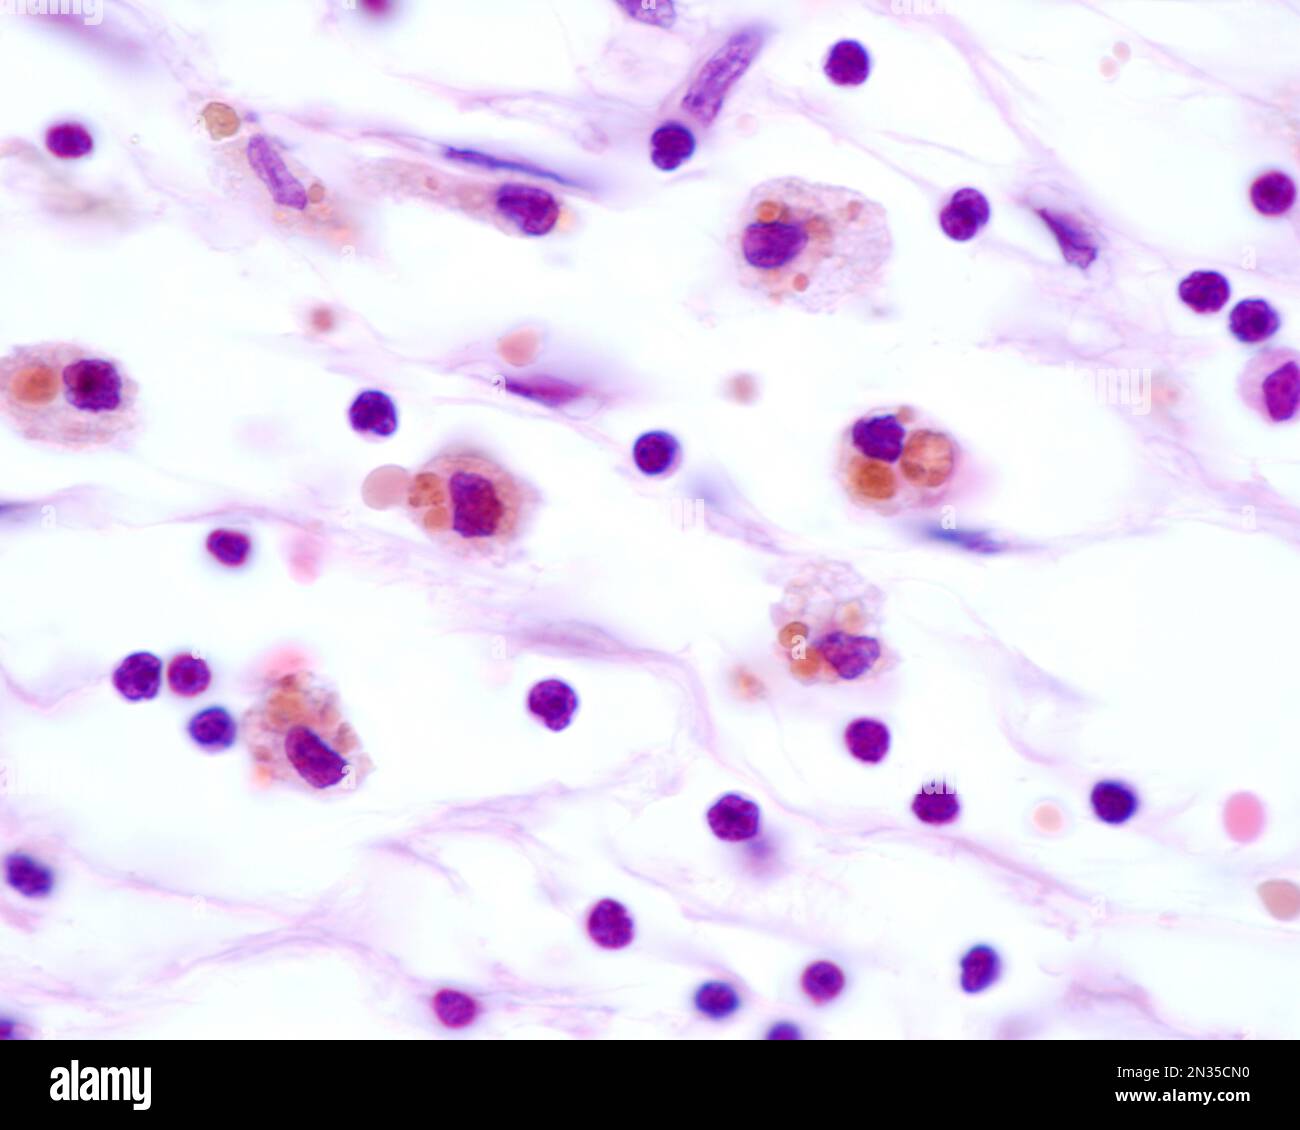 Les macrophages présentant de grandes inclusions brunes proviennent de la phagocytose des globules rouges après une hémorragie Banque D'Images